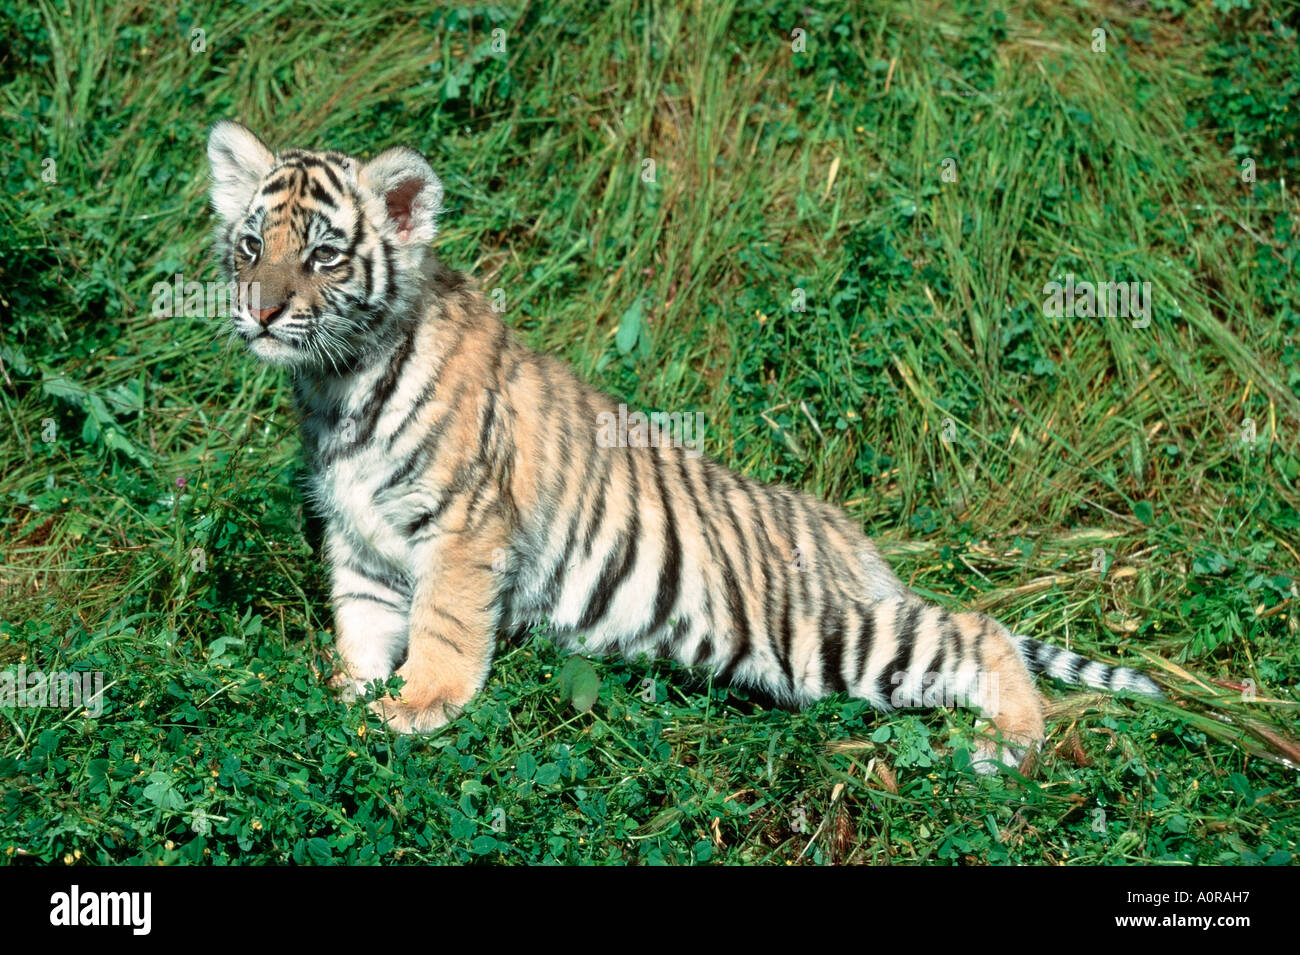 Bengal Tiger / Indischer Tiger / Koenigstiger Stock Photo